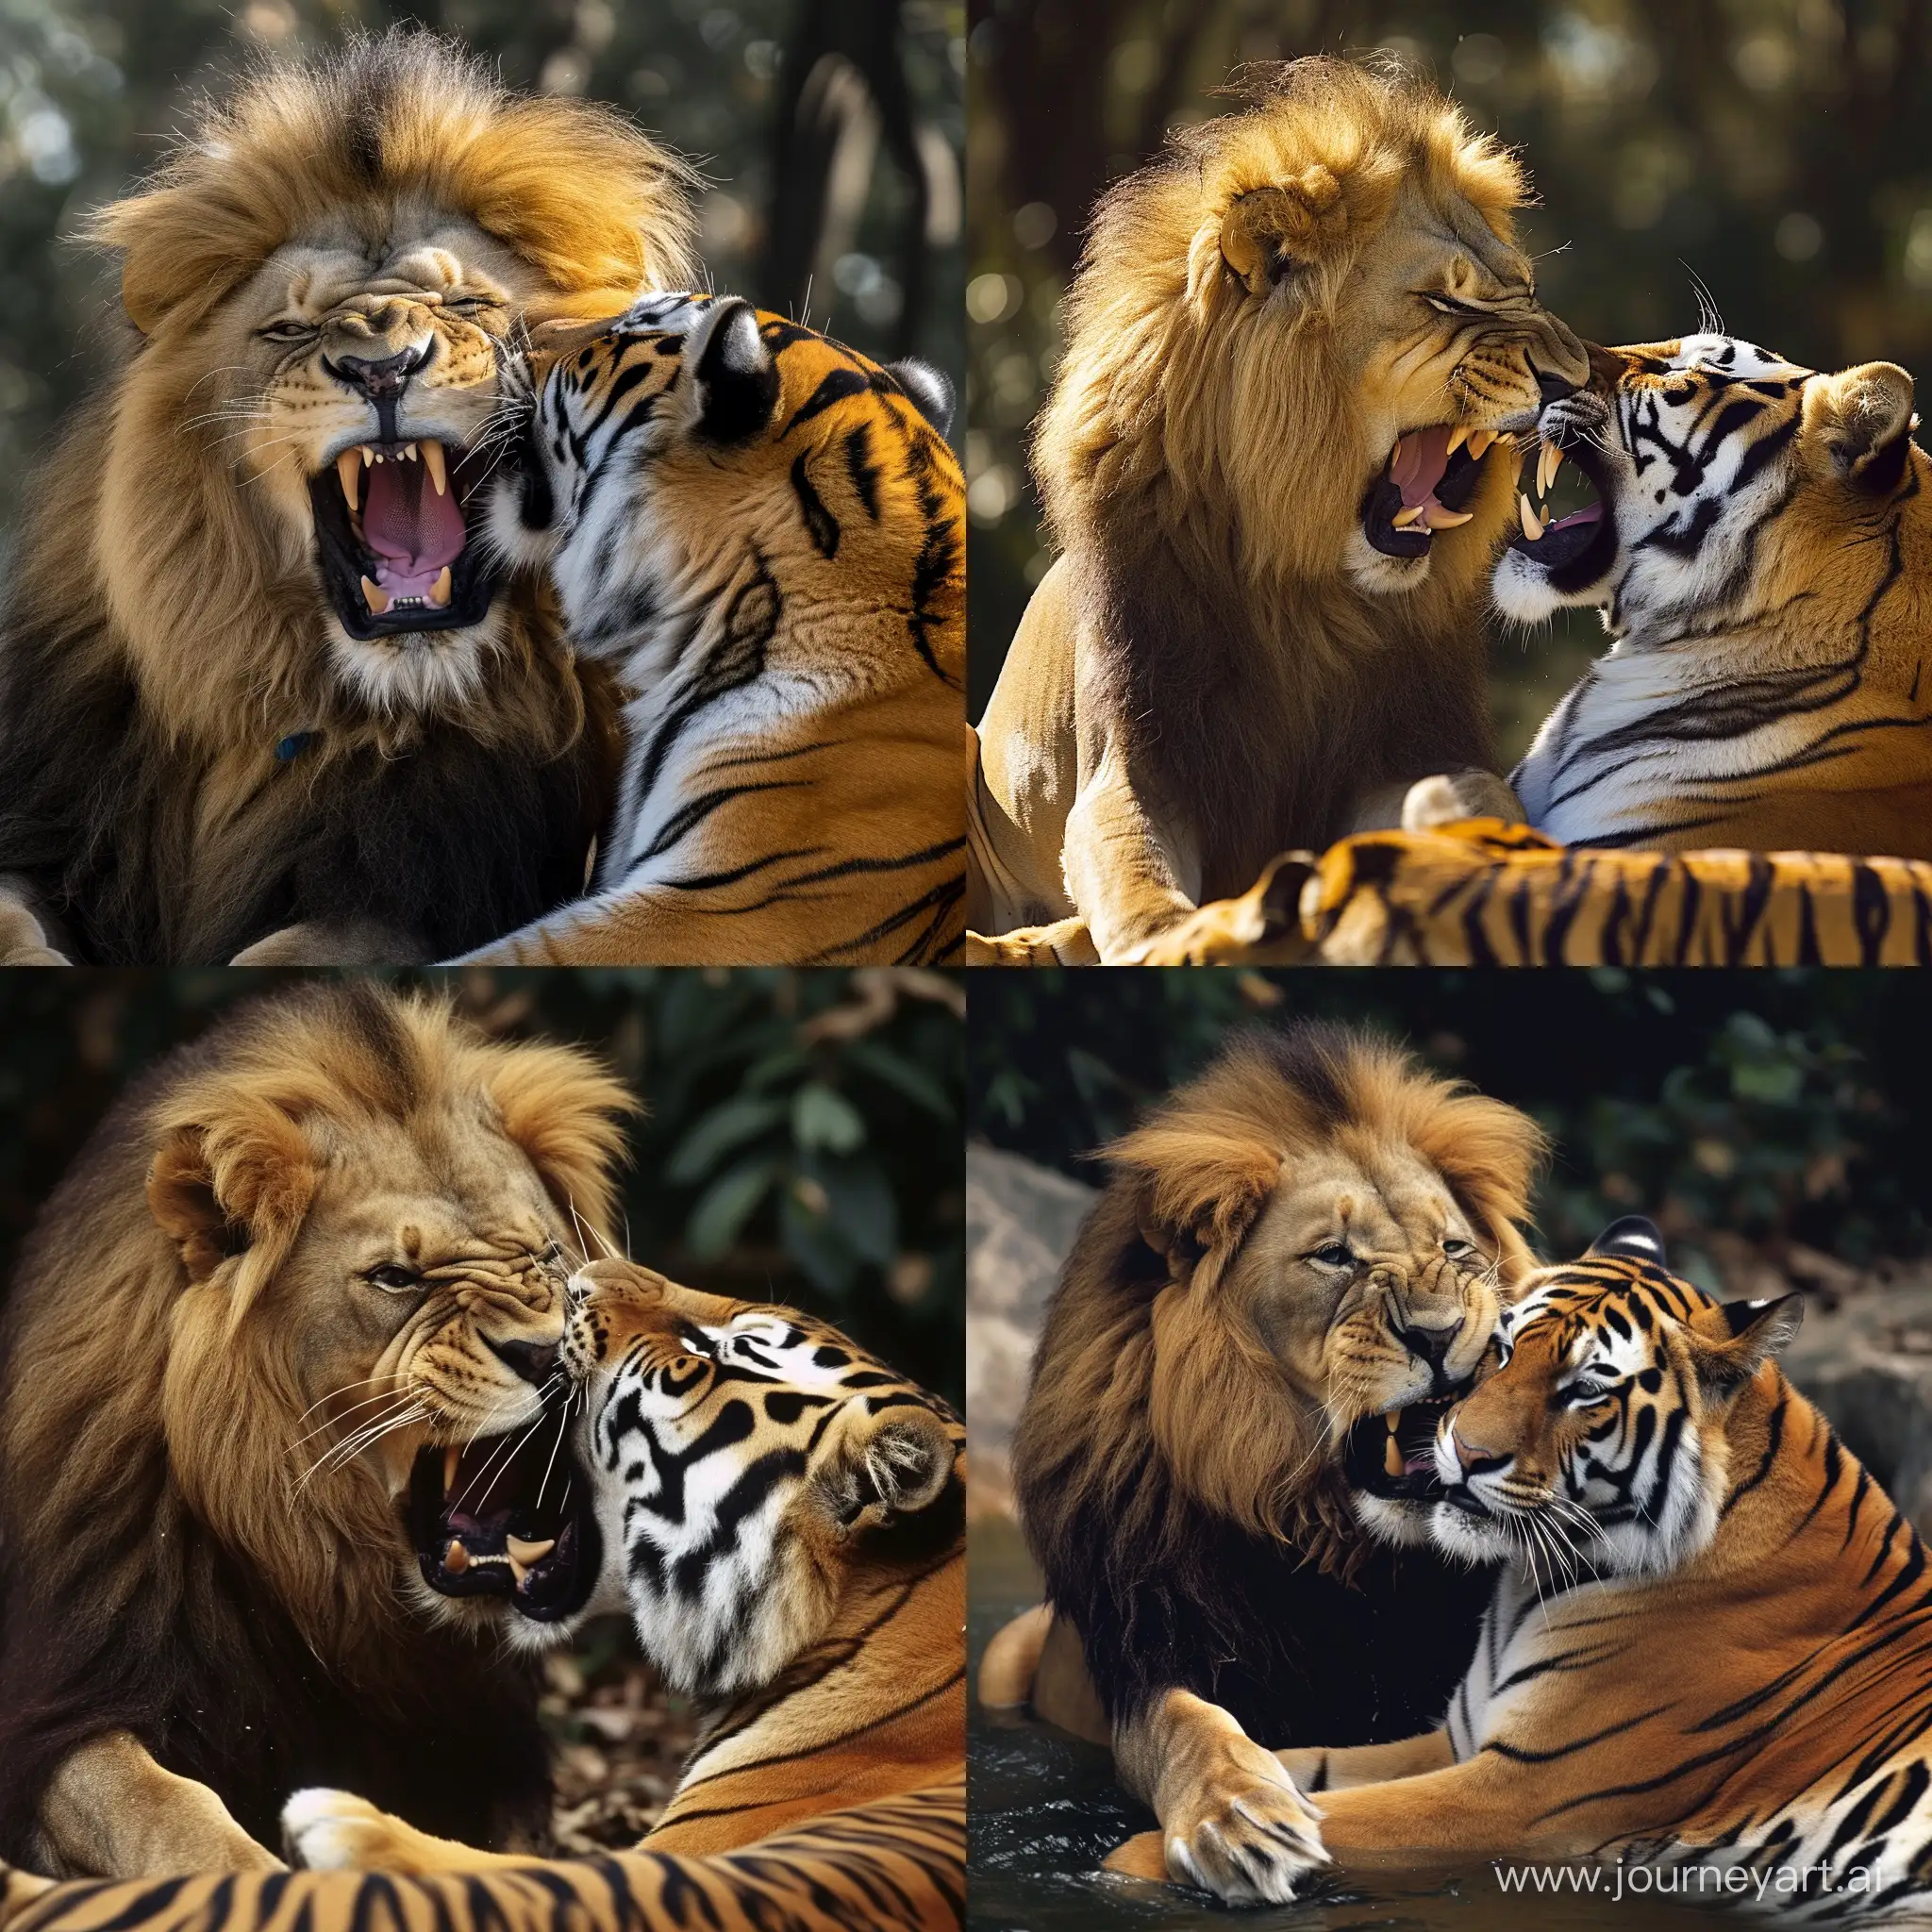 一头强壮的雄狮撕咬着一头老虎